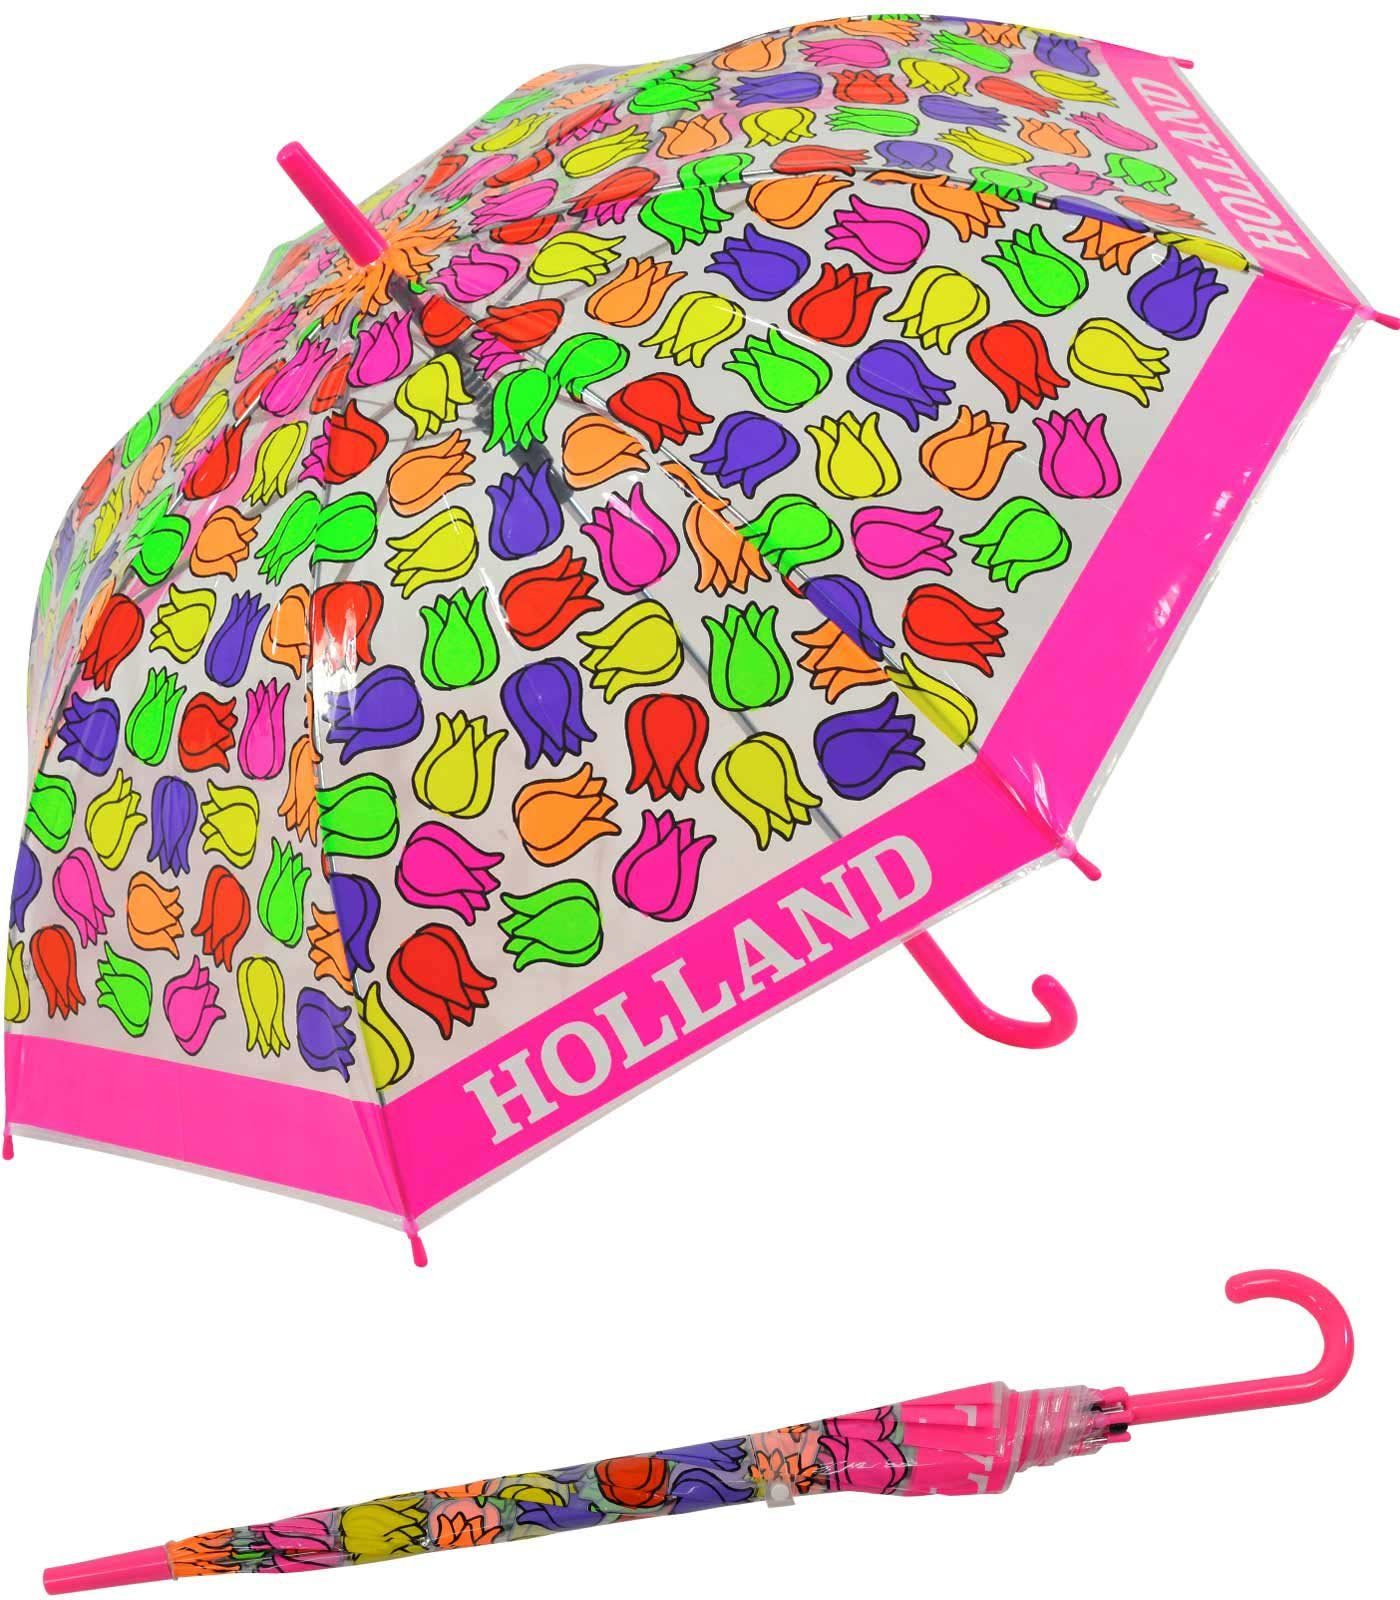 Impliva Langregenschirm Falconetti Kinderschirm transparent Tulpen, - bunt durchsichtig pink